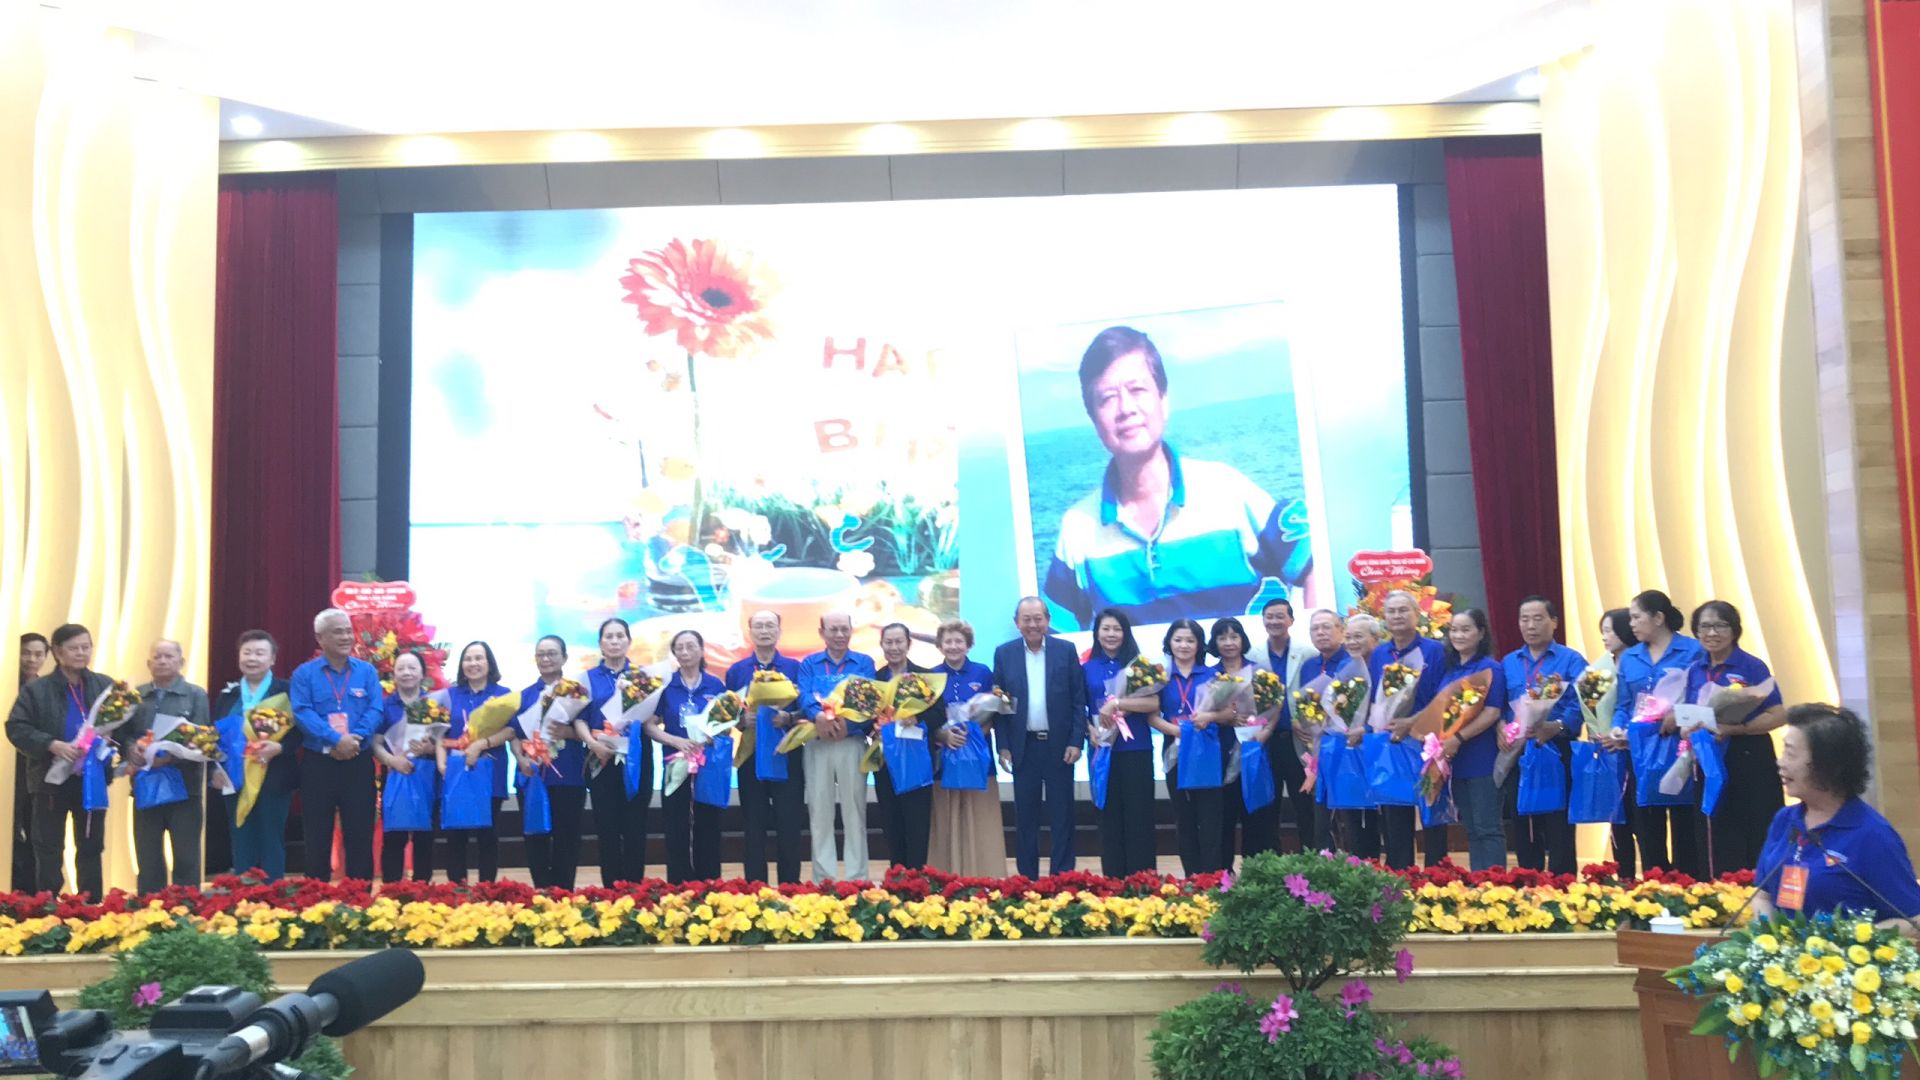 Đồng chí. Trương Hoà Bình - nguyên Uỷ viên Bộ Chính trị, nguyên Phó Thủ tướng Thường trực Chính phủ, tặng hoa biểu dương các Cựu Cán bộ Đoàn có nhiều thành tích trong công tác xã hội và trong hoạt động của BLL.